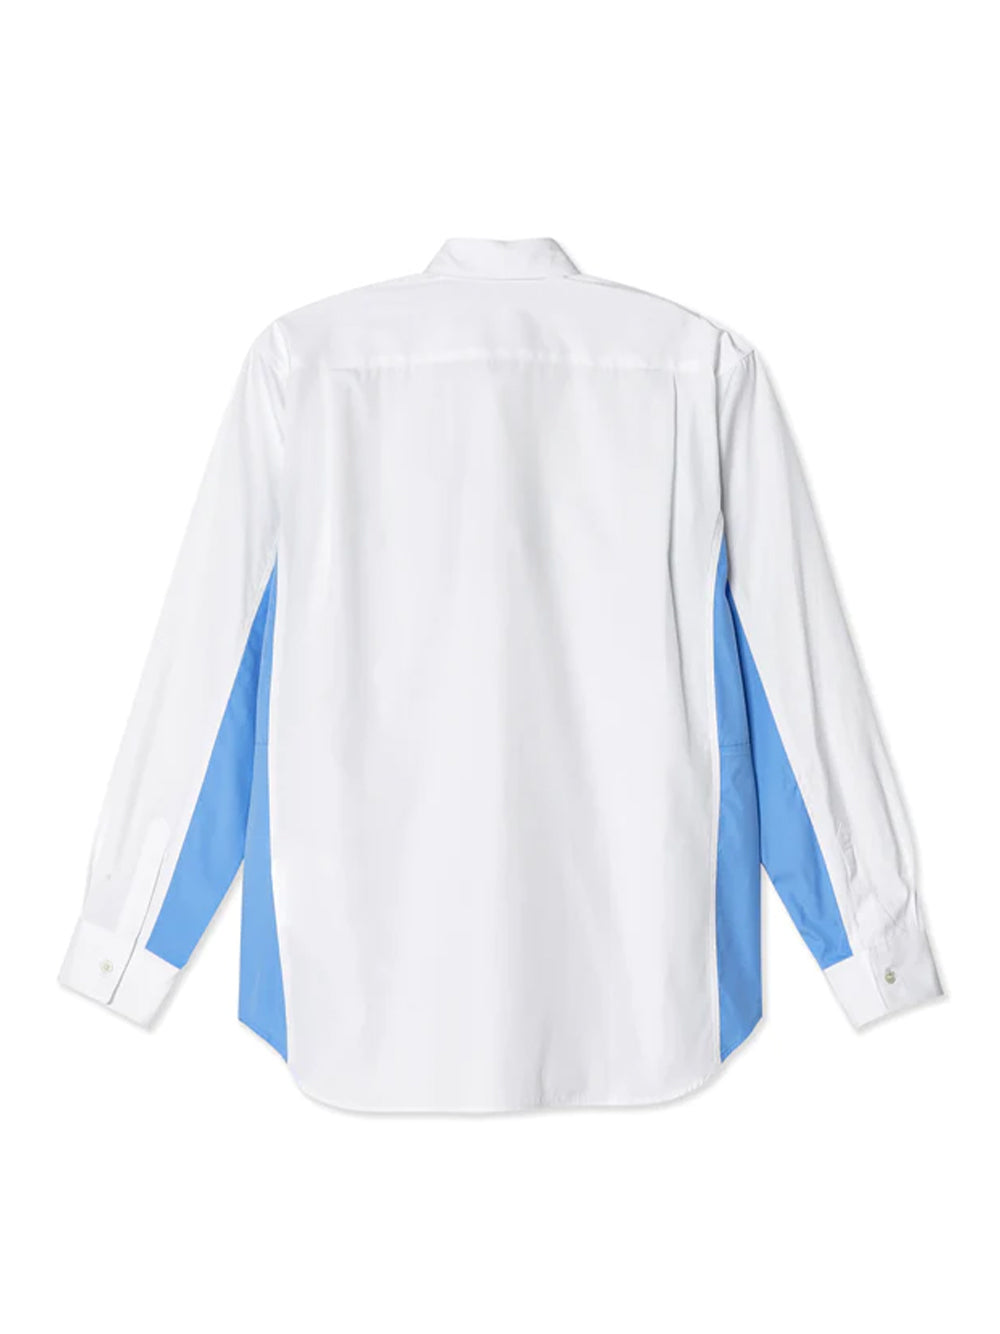 Cotton Stripe Poplin Shirt (White/Stripe)